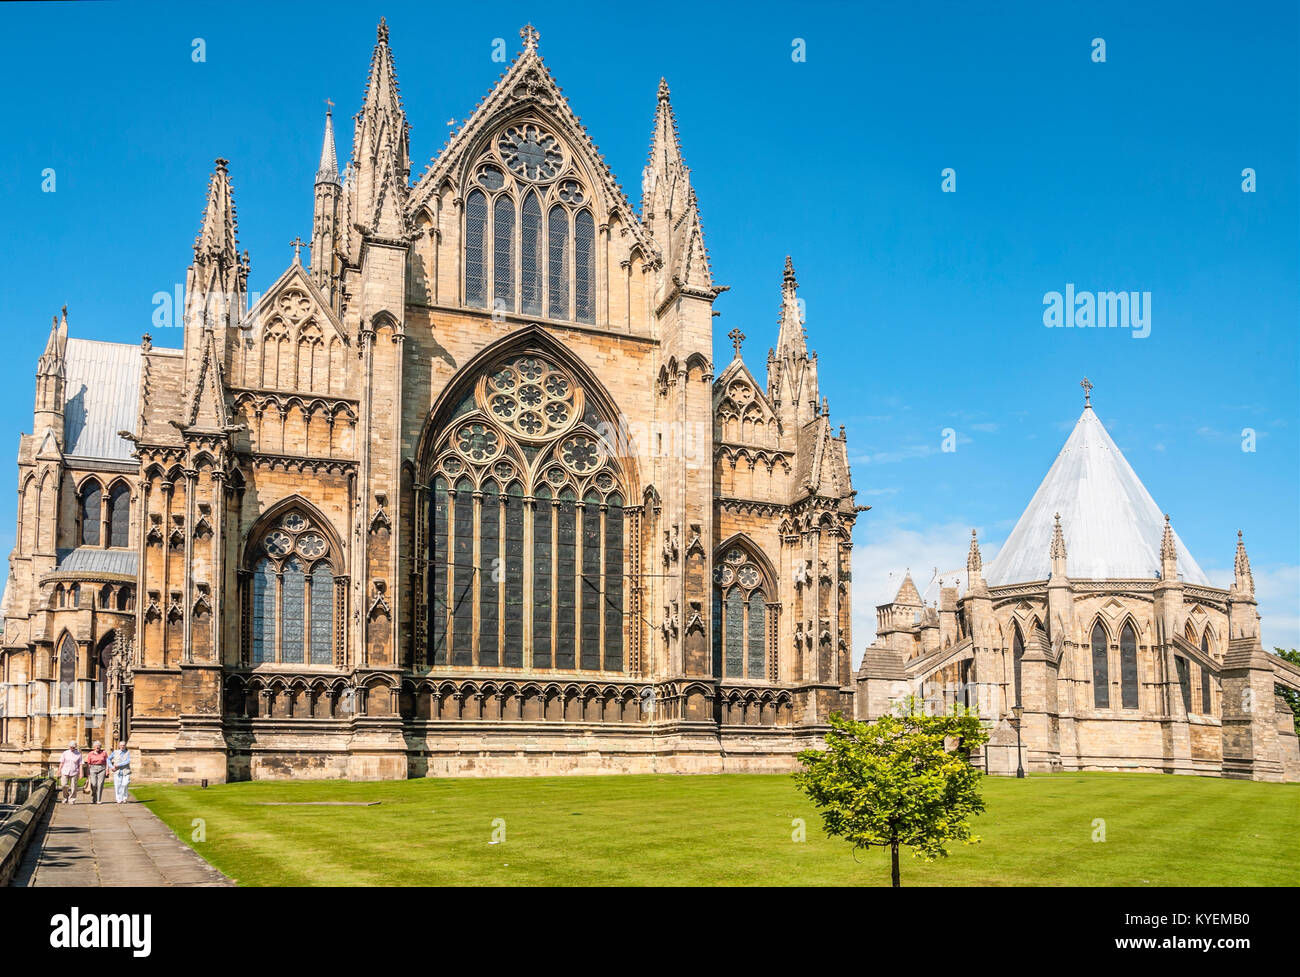 La Cattedrale di Lincoln, nella città vecchia, è una storica cattedrale anglicana di Lincoln in Inghilterra Foto Stock